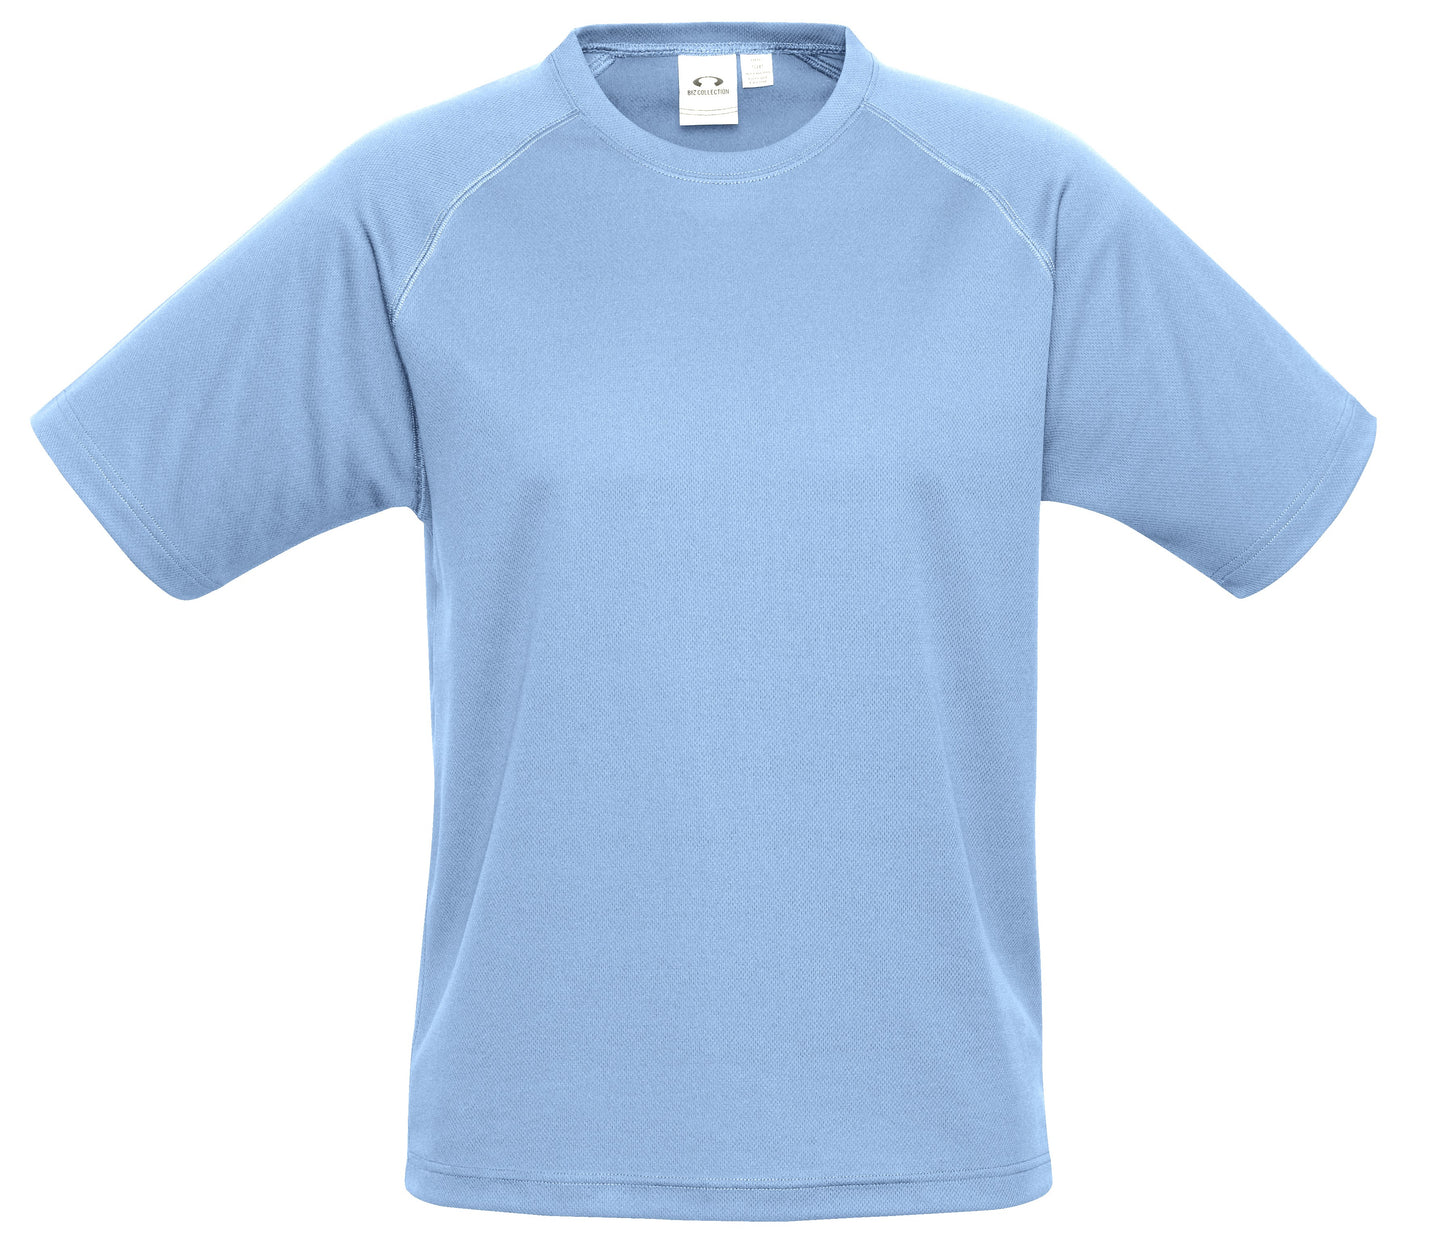 Mens Sprint T-Shirt - Light Blue Only